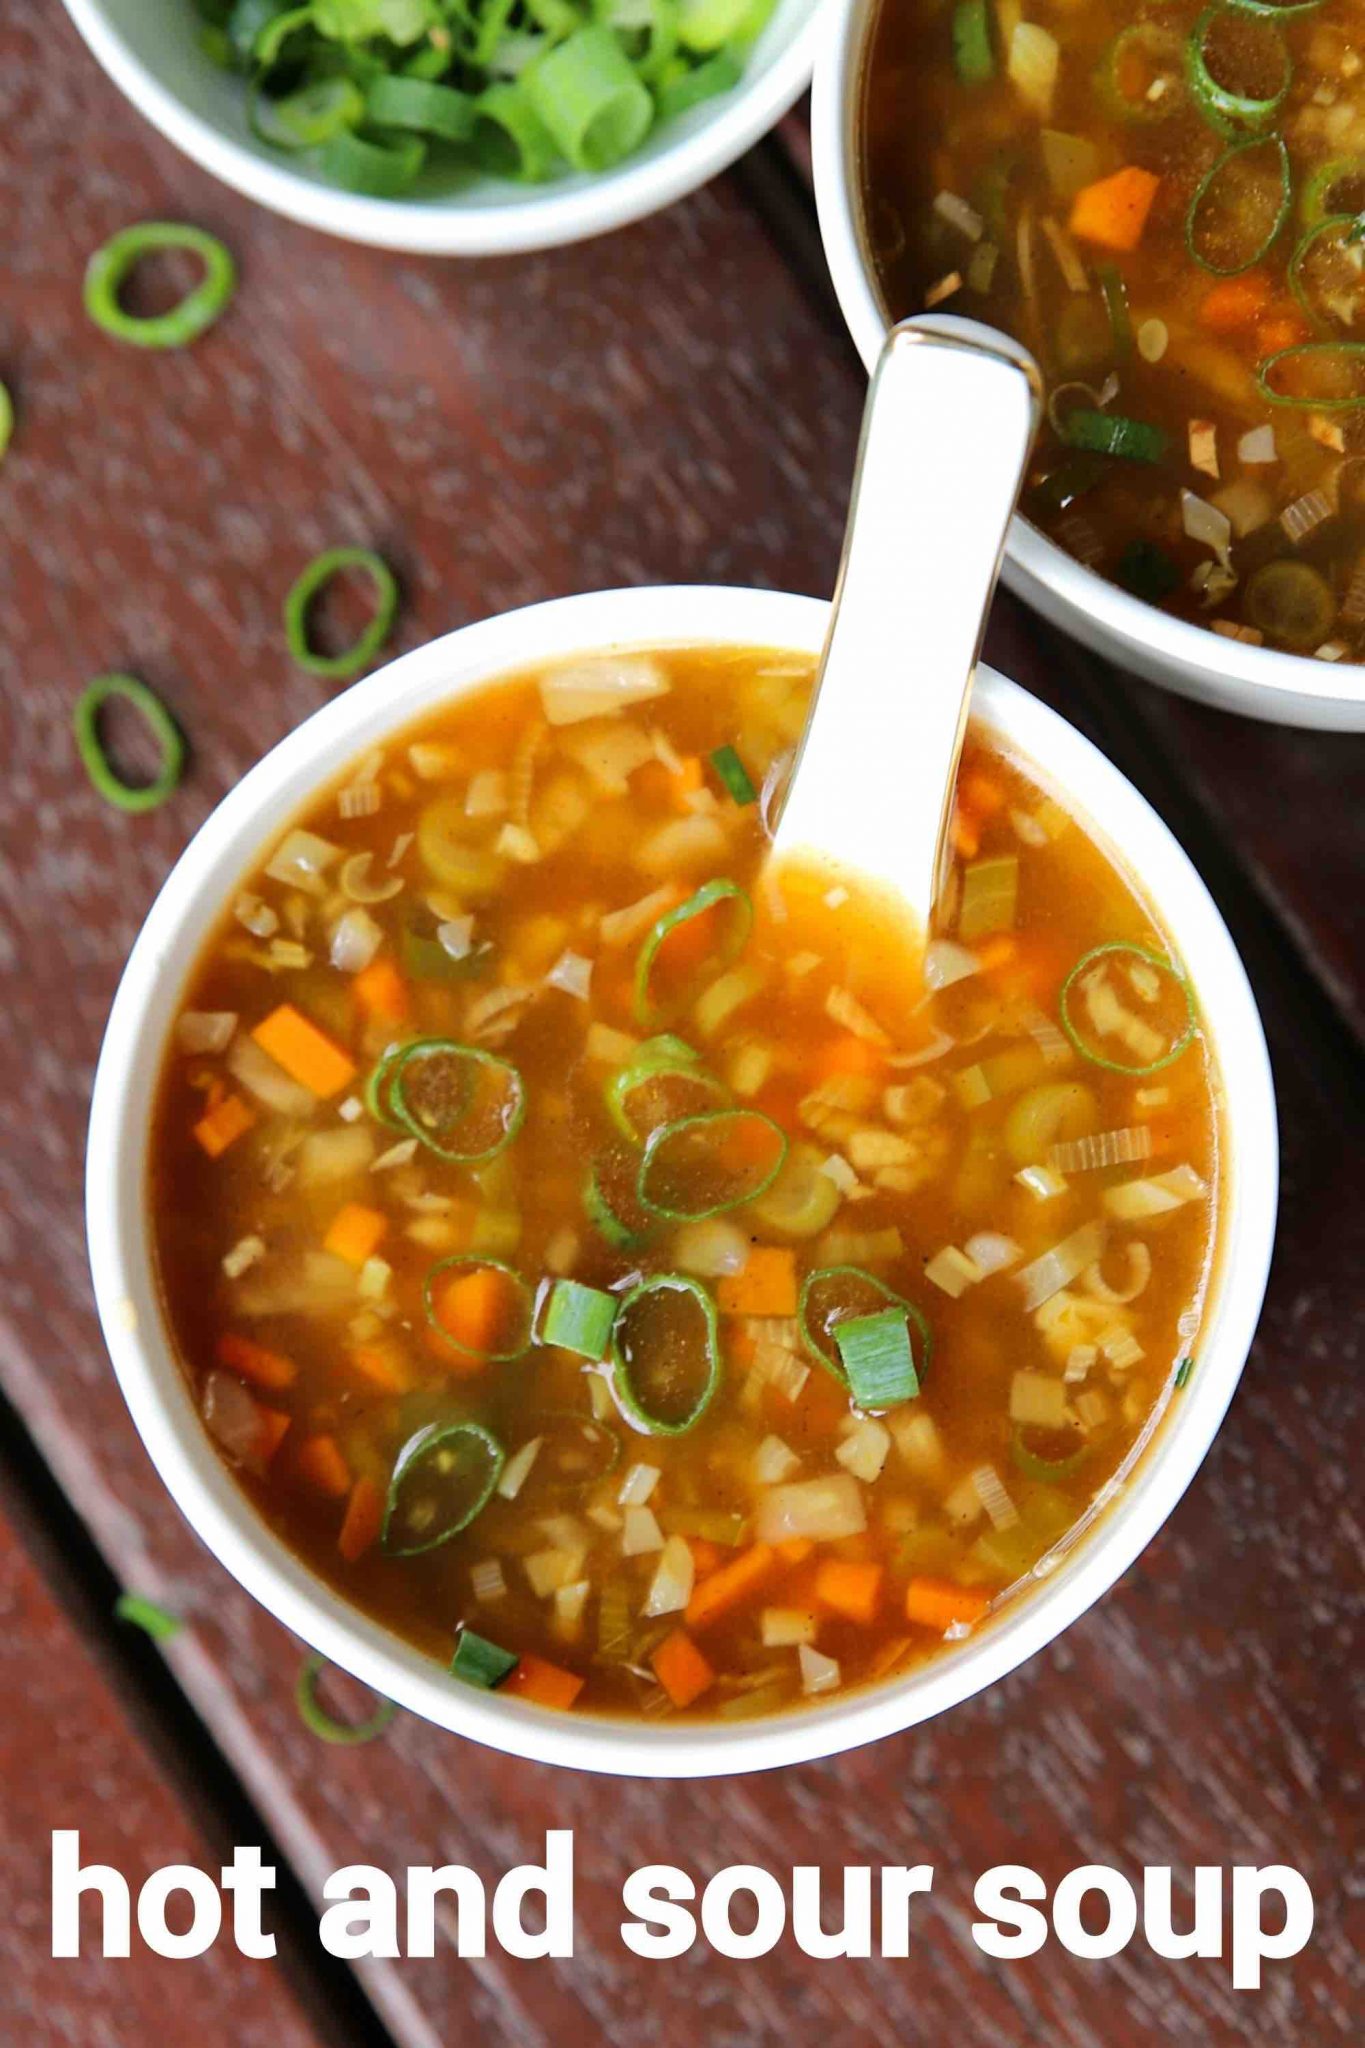 hot and sour soup recipe | hot n sour soup | hot sour soup recipe